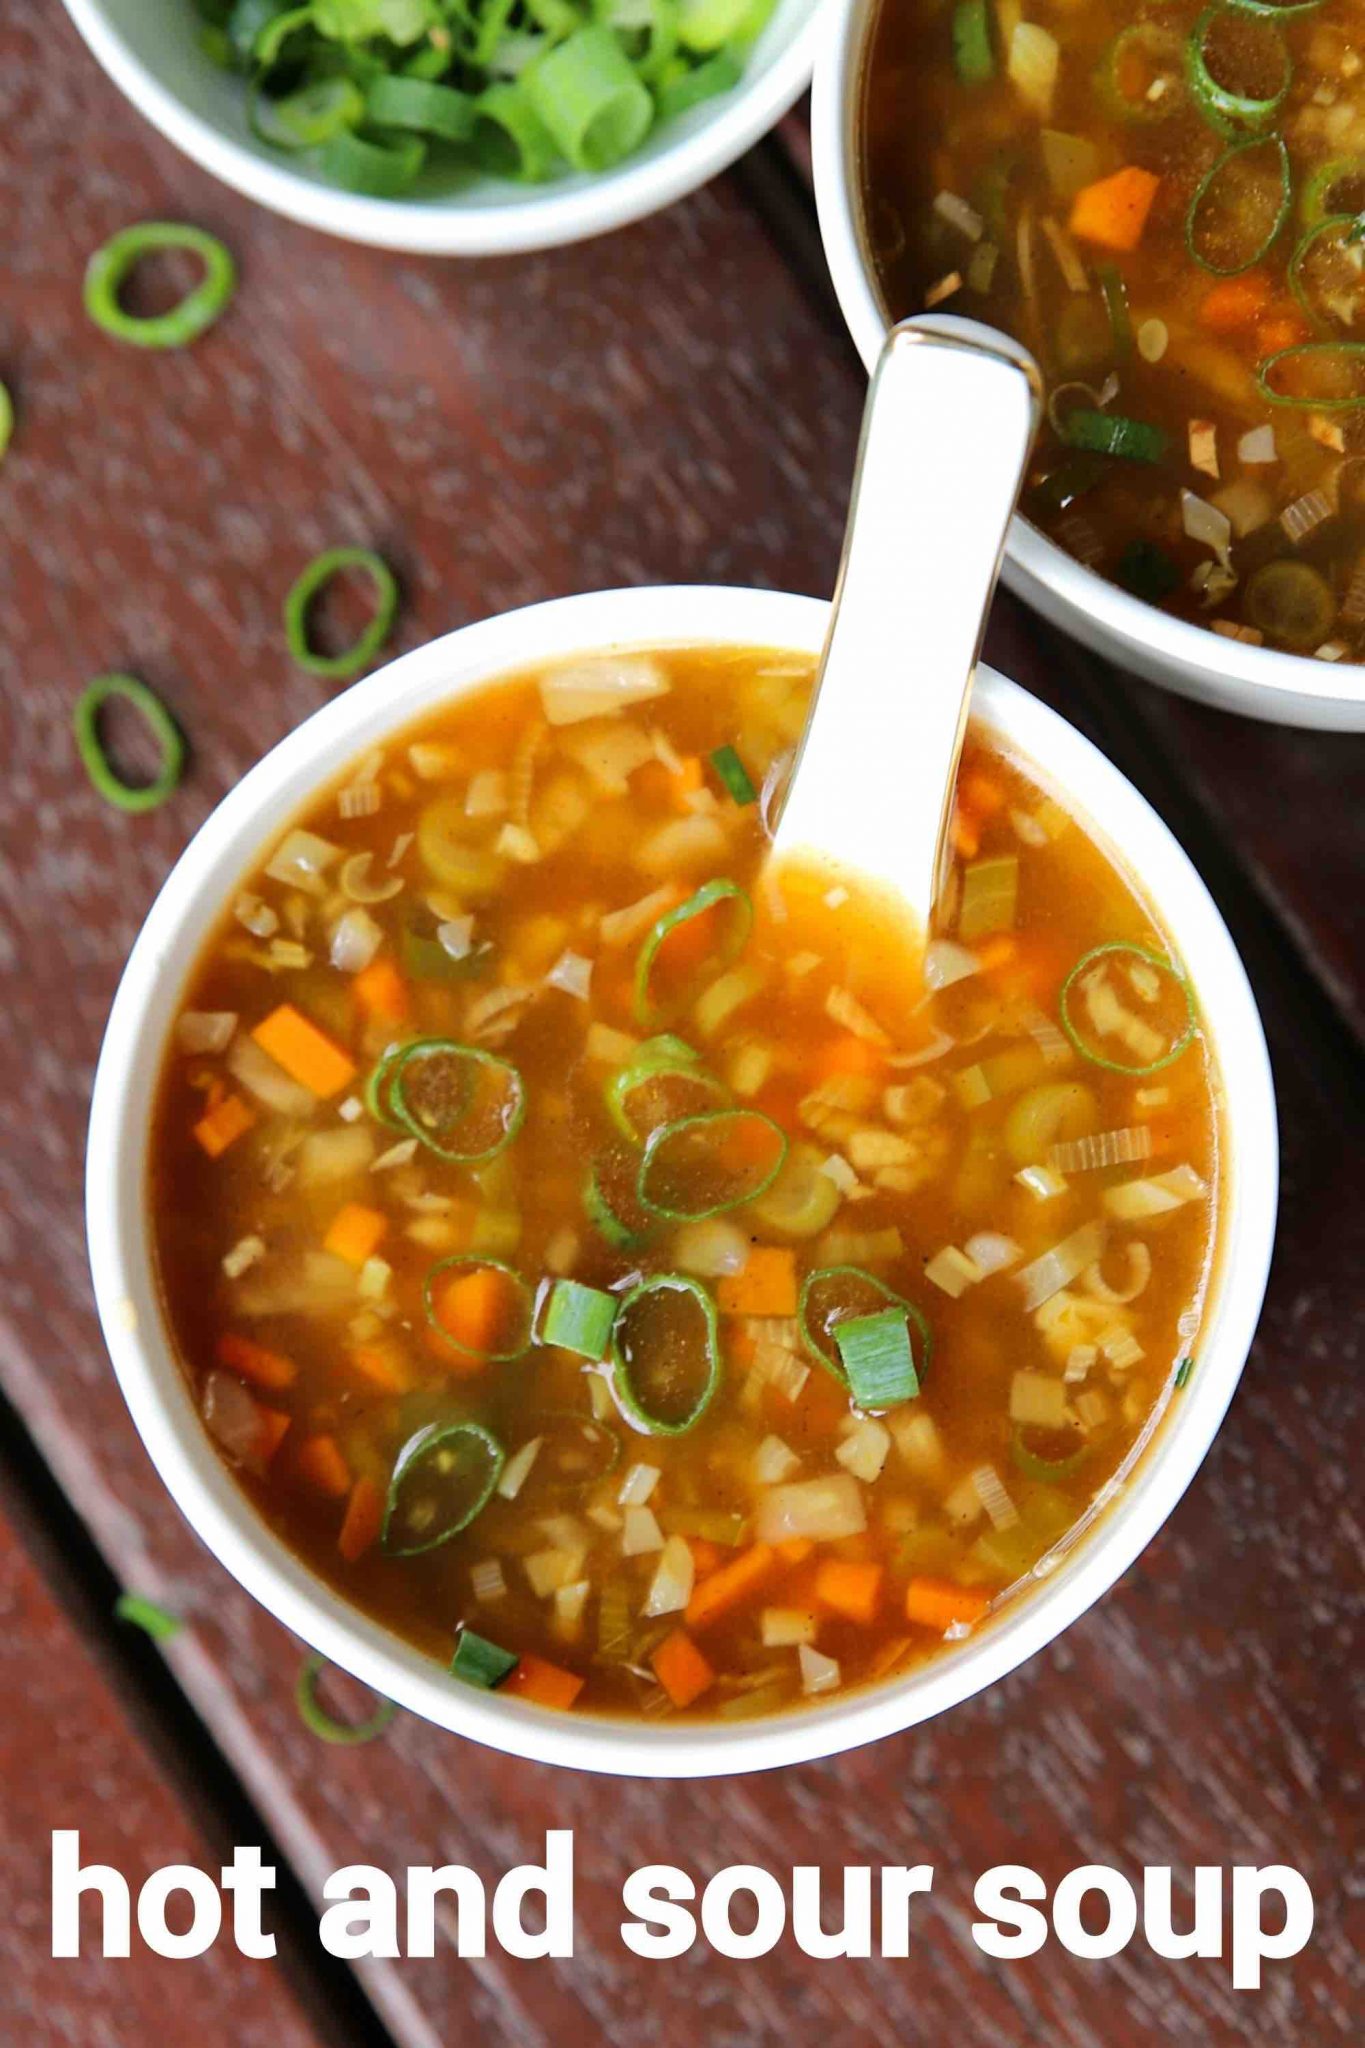 hot and sour soup recipe | hot n sour soup | hot sour soup recipe